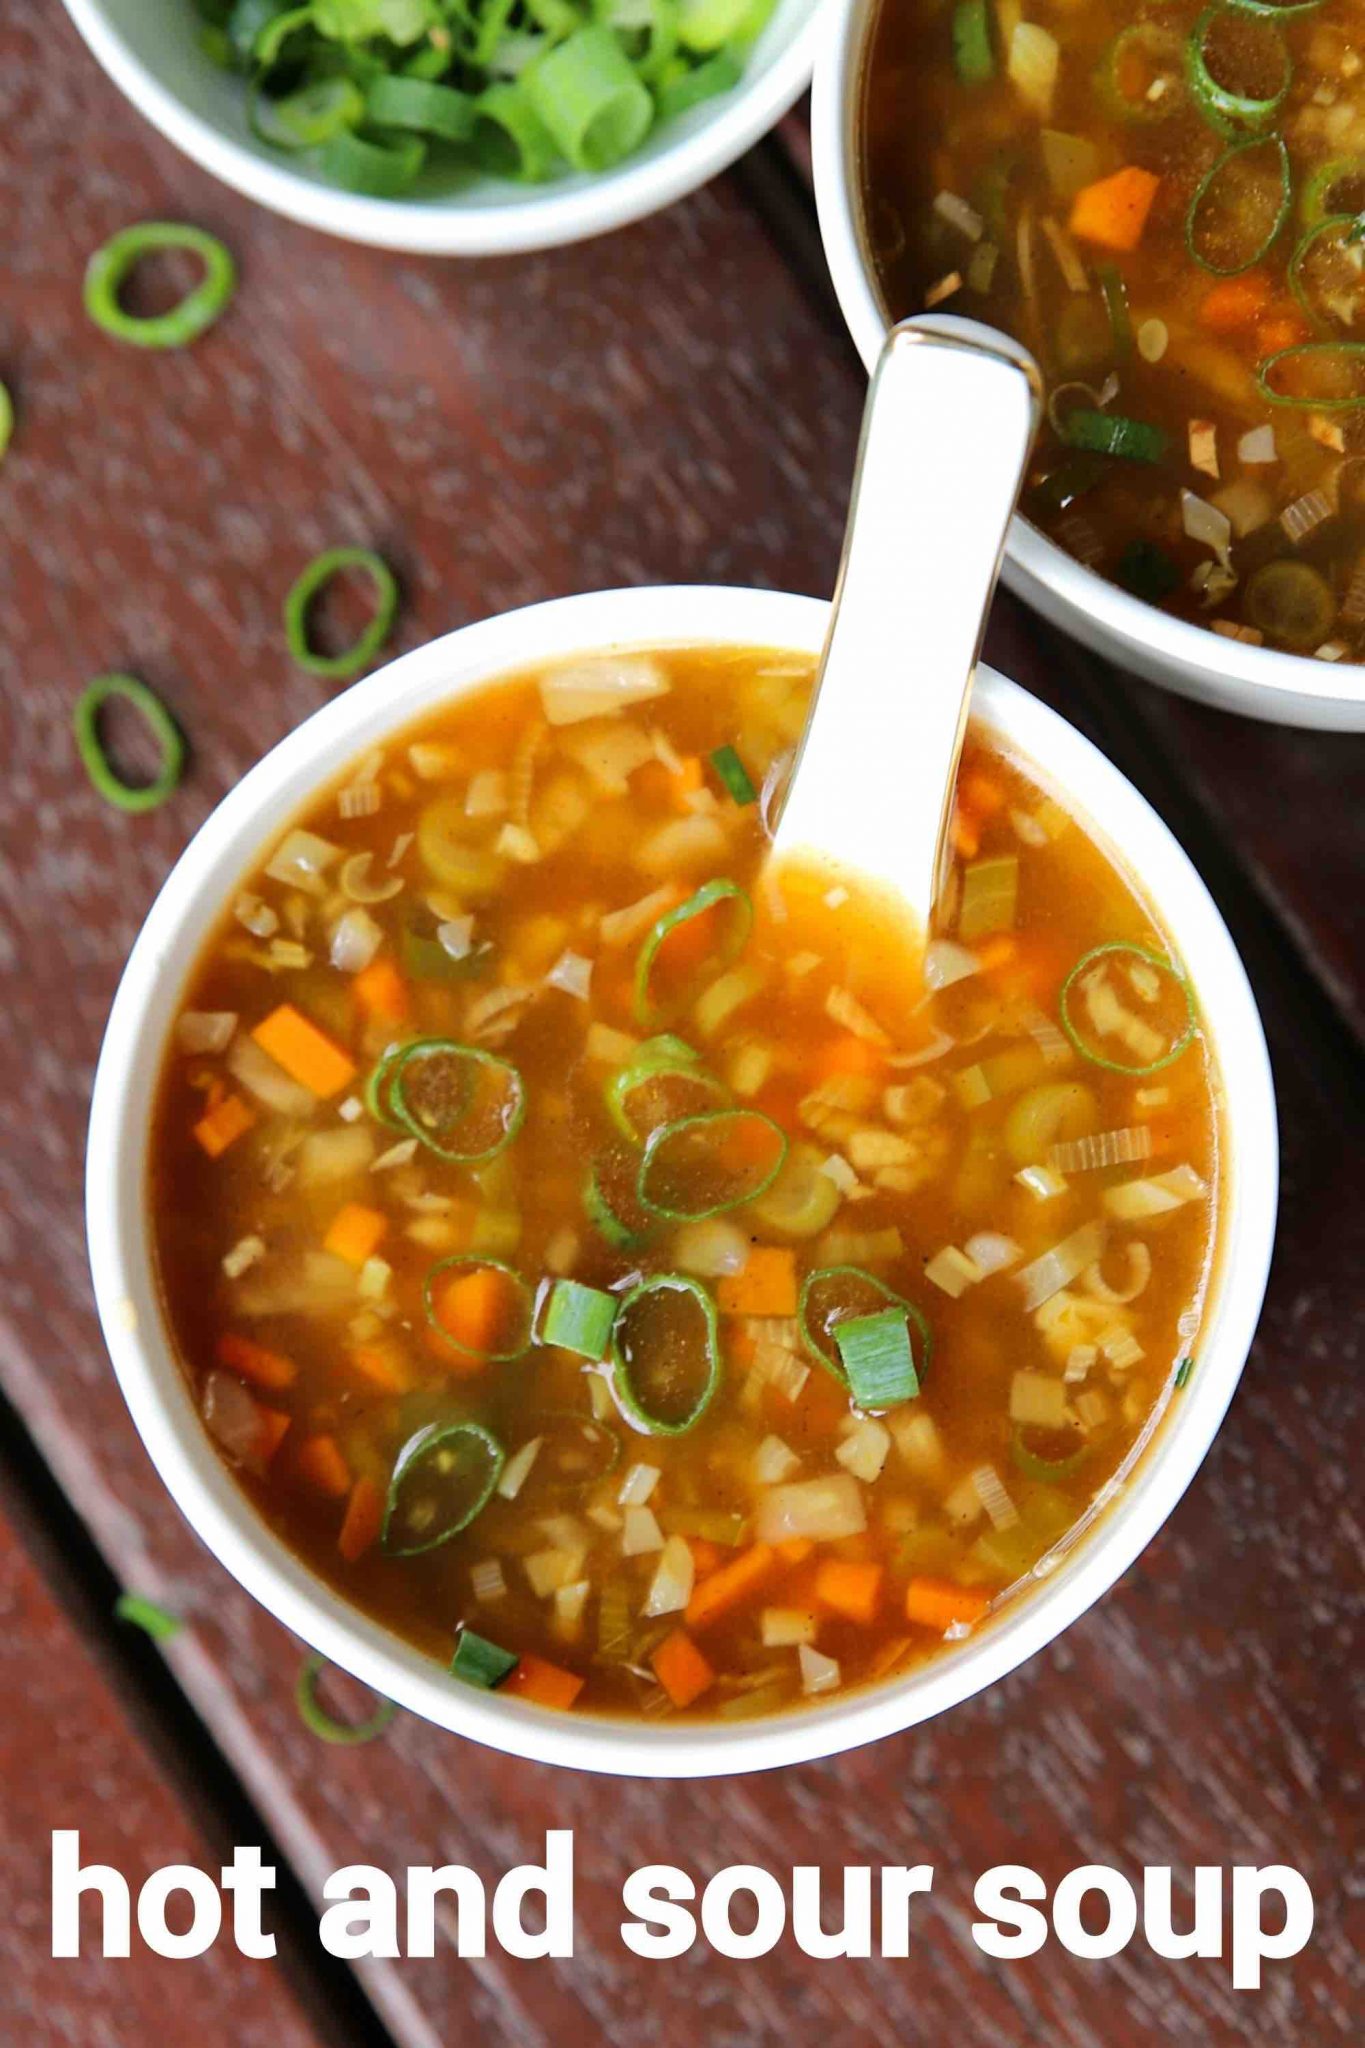 hot and sour soup recipe | hot n sour soup | hot sour soup recipe